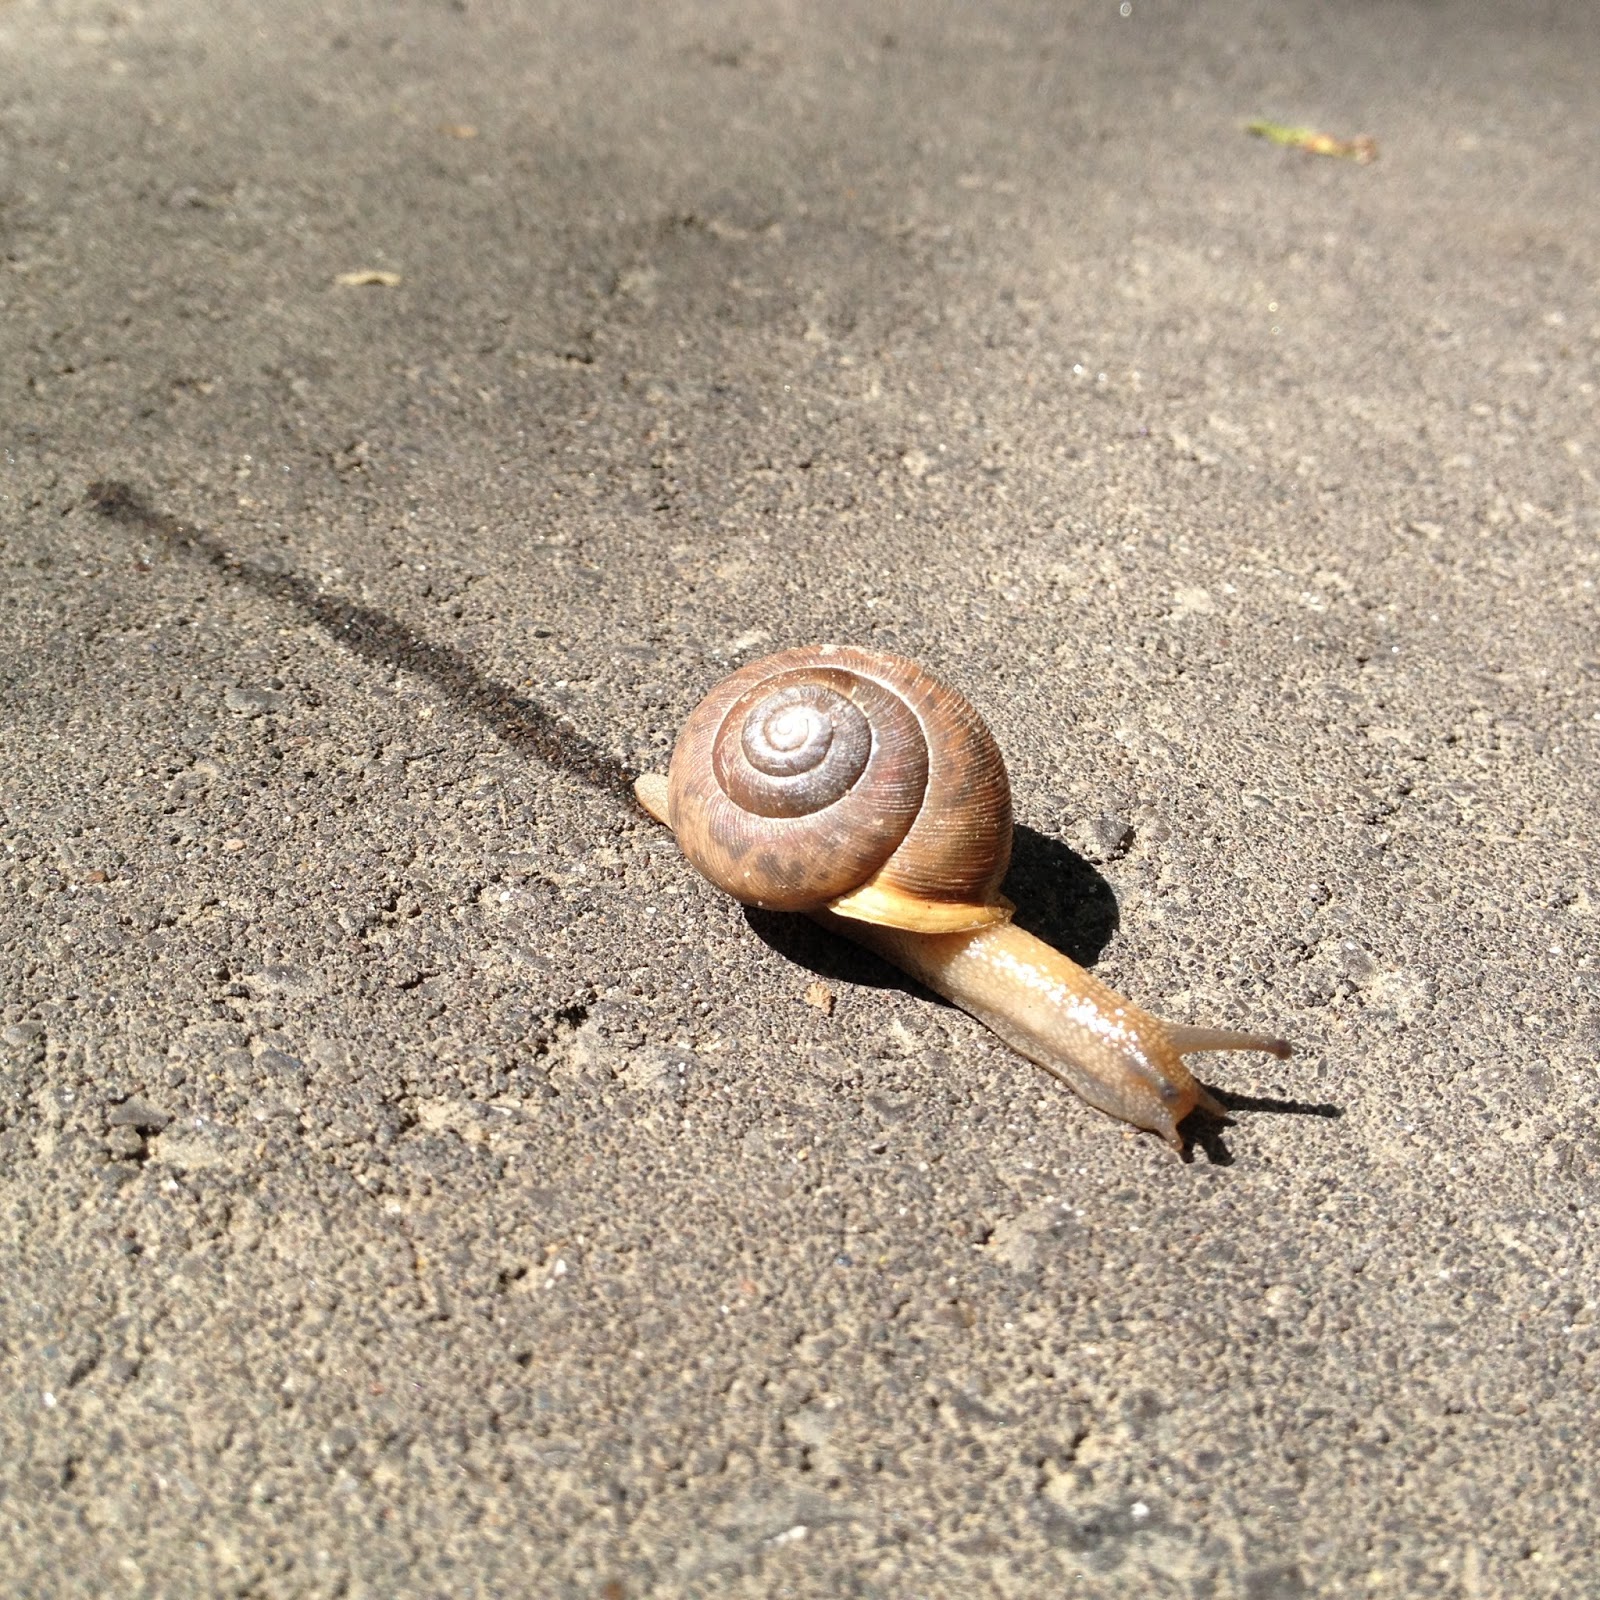 A snail's trail.